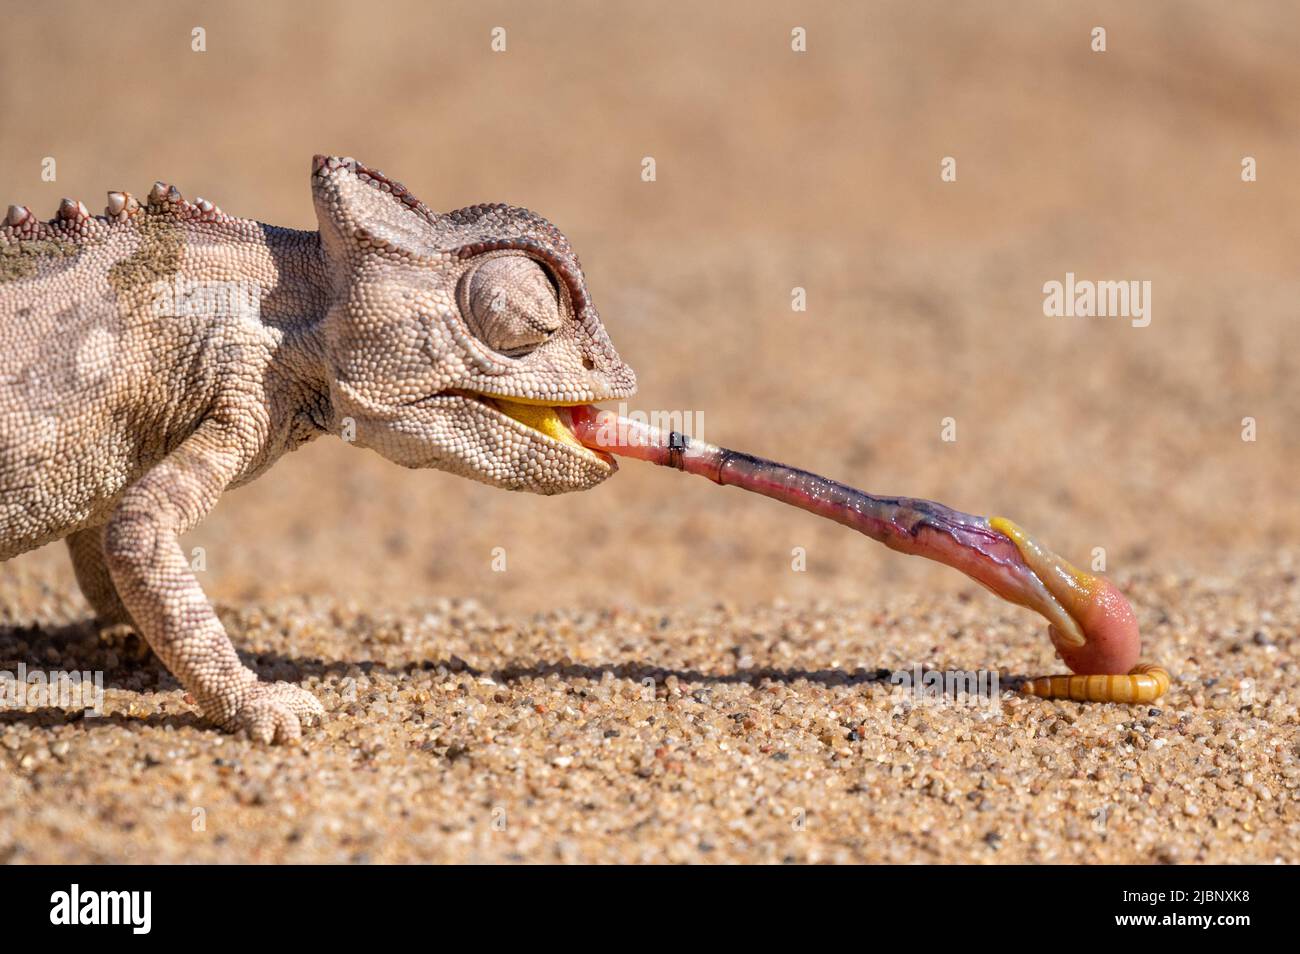 Tongue lashing Namaqua Chameleon in Namib desert Namibia Stock Photo